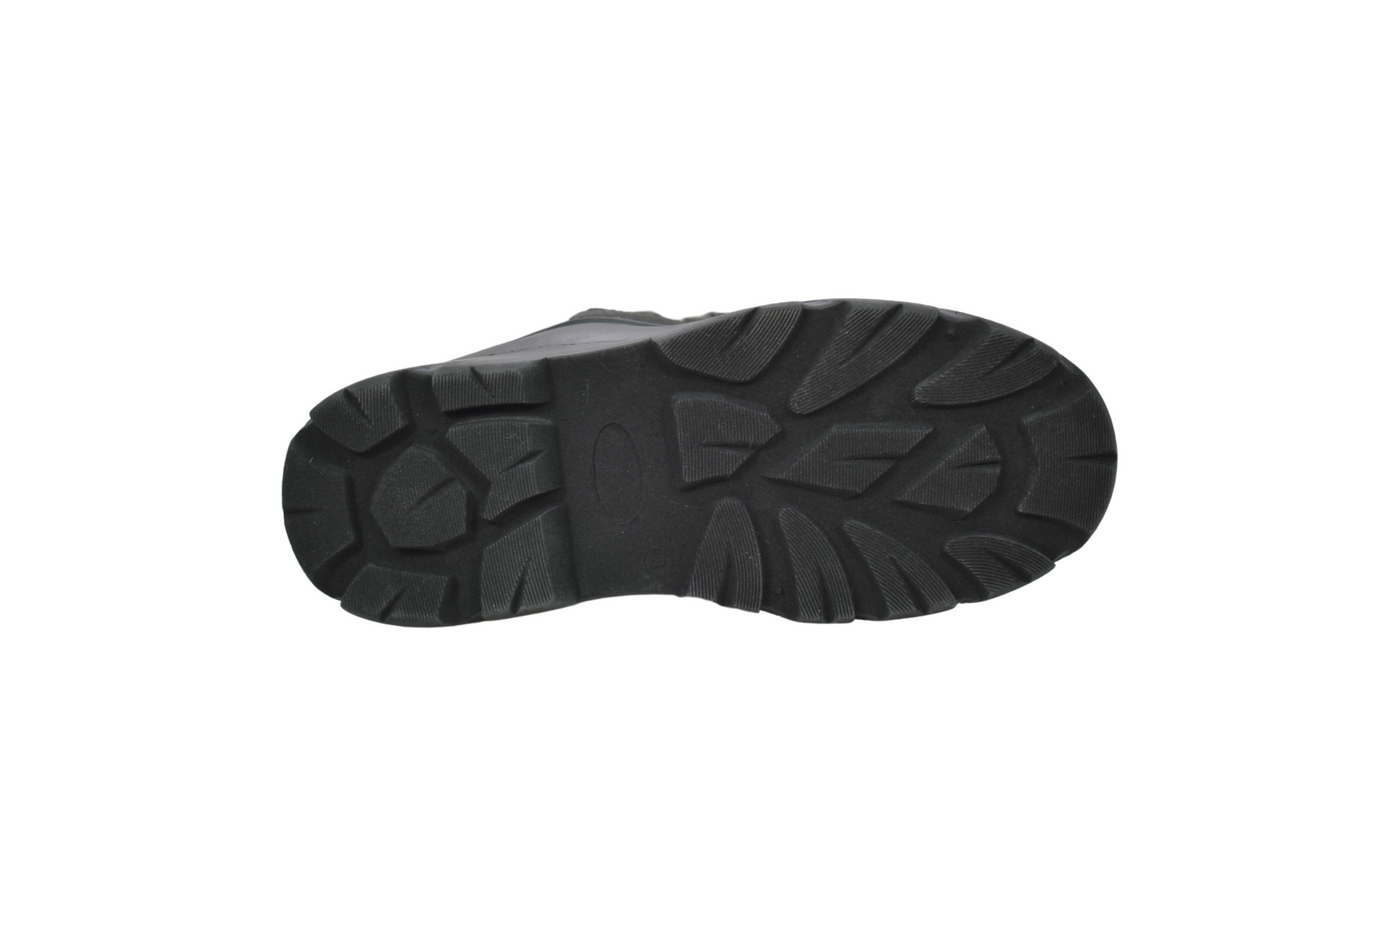 Women's Lace Black Winter Boot - NH03-BK - Shop Genuine Leather men & women's boots online | AdTecFootWear